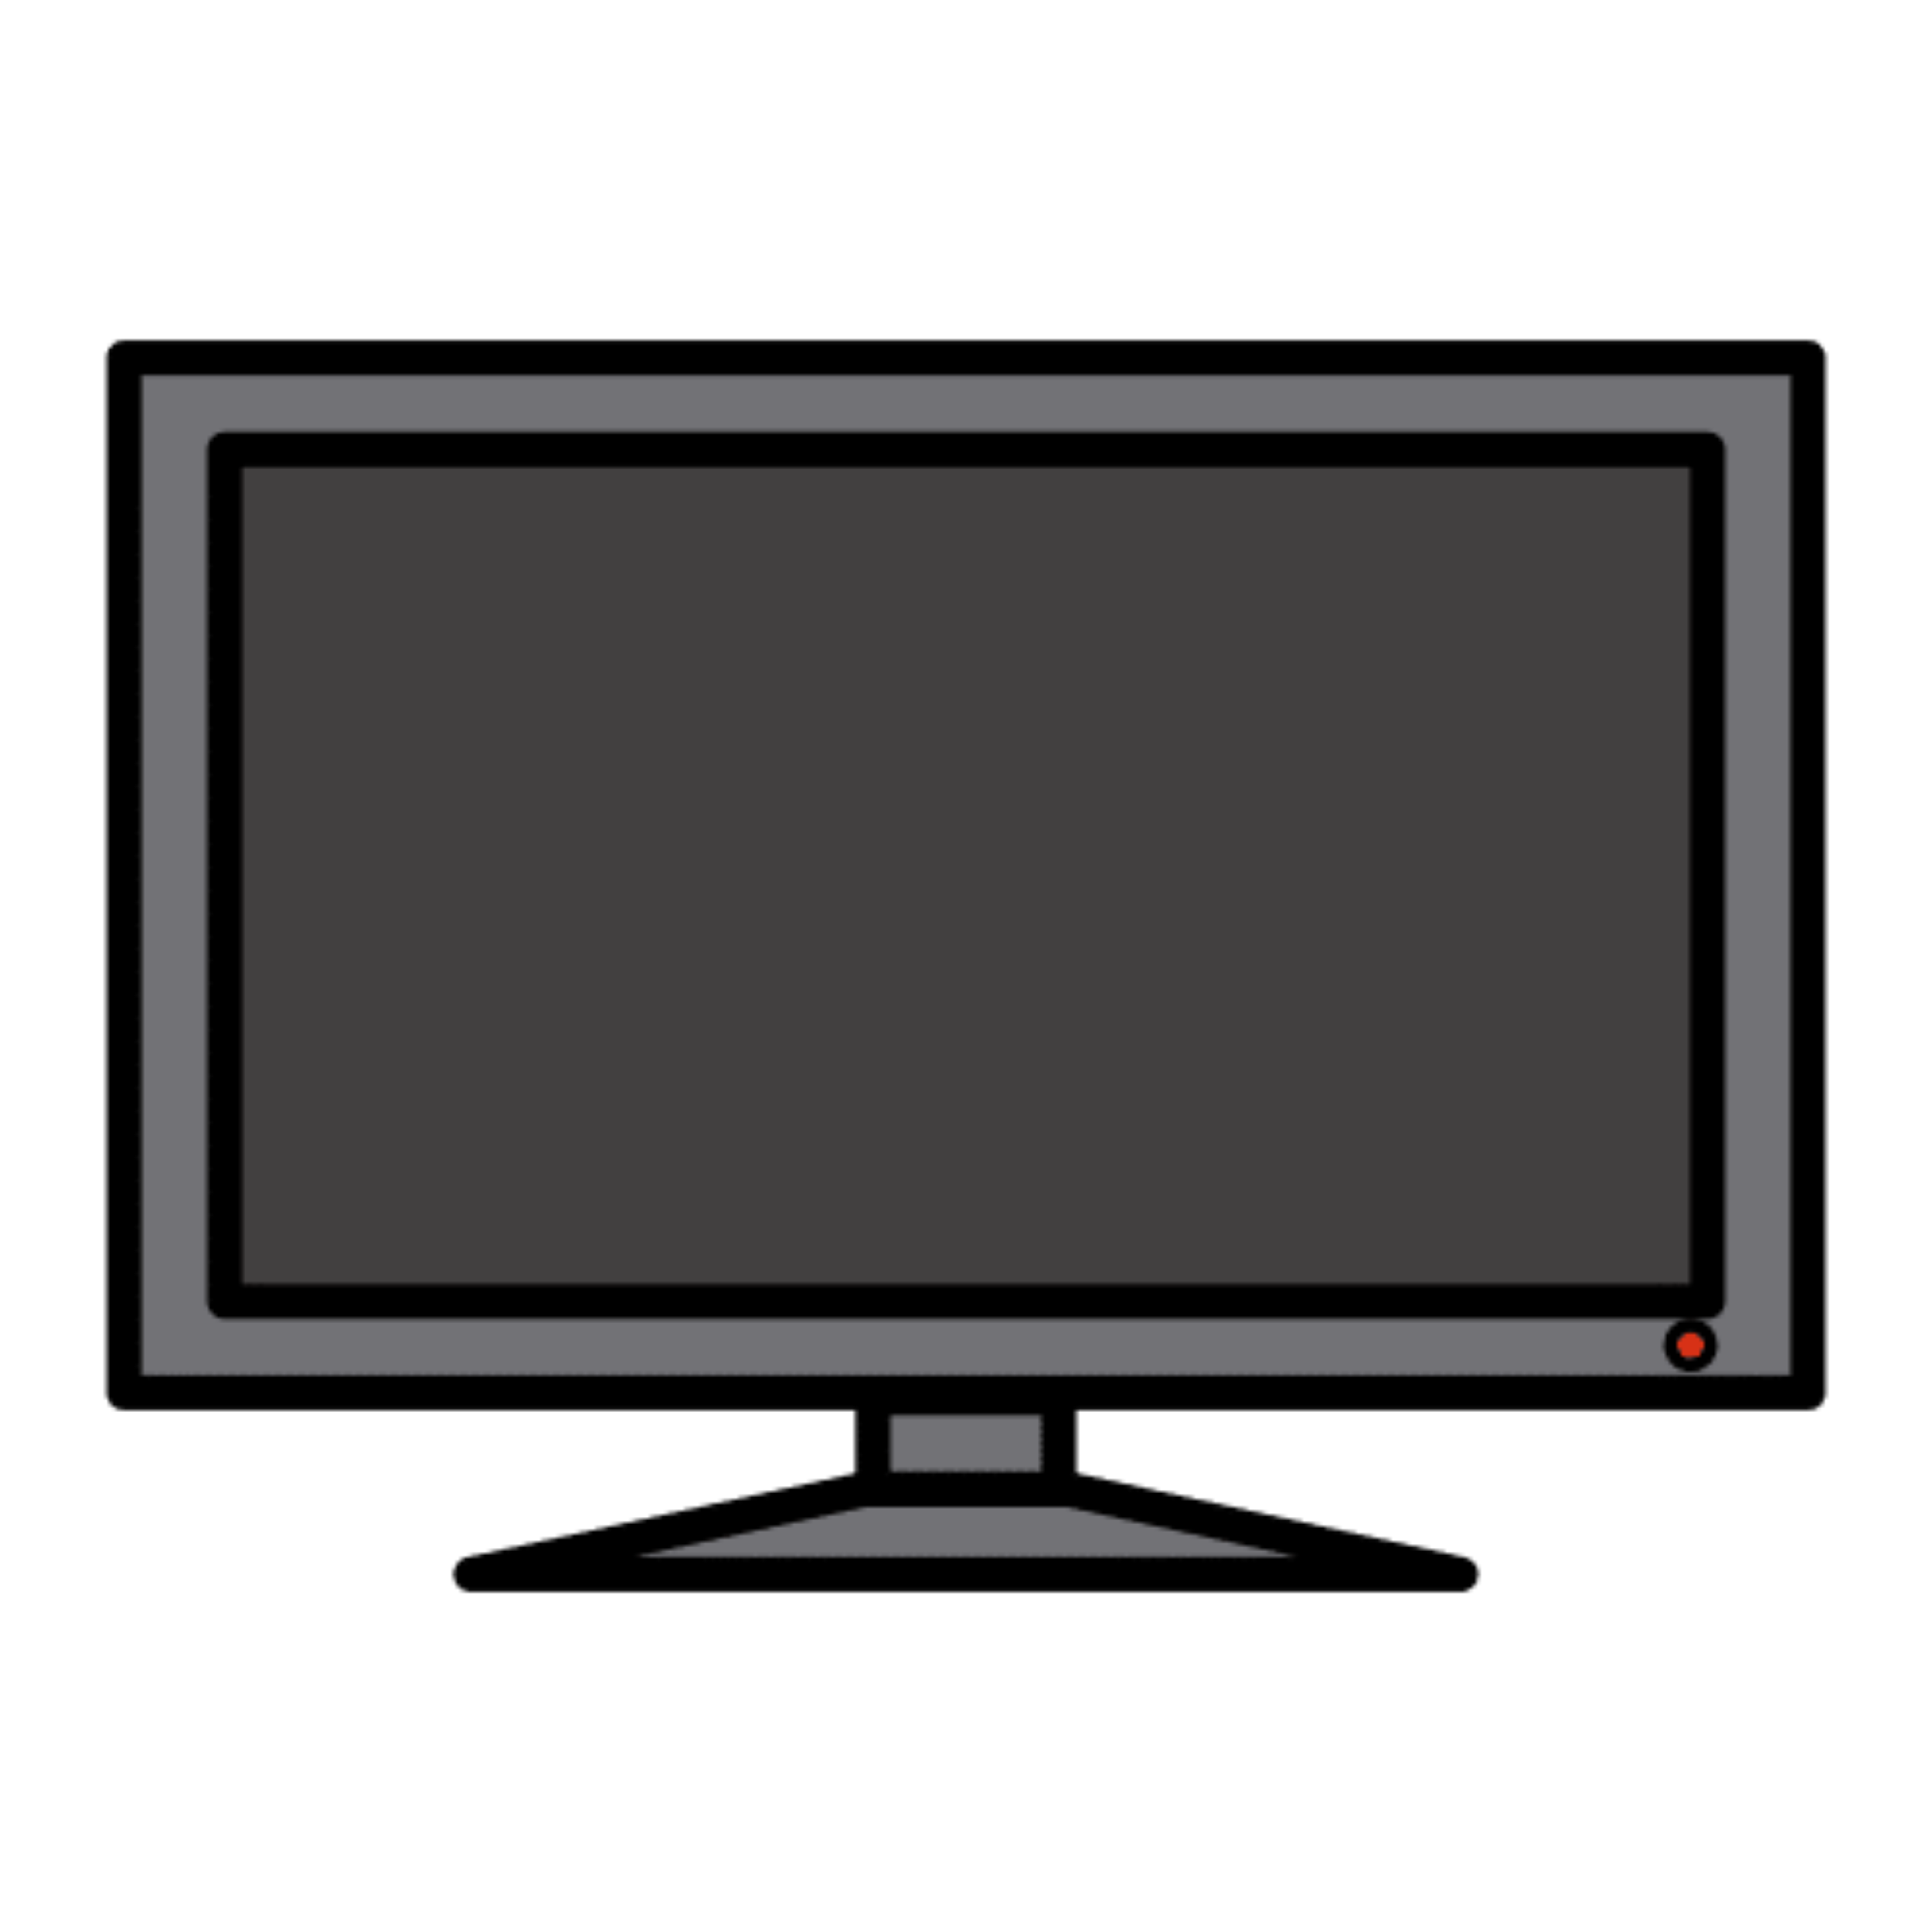 La imagen muestra un televisor